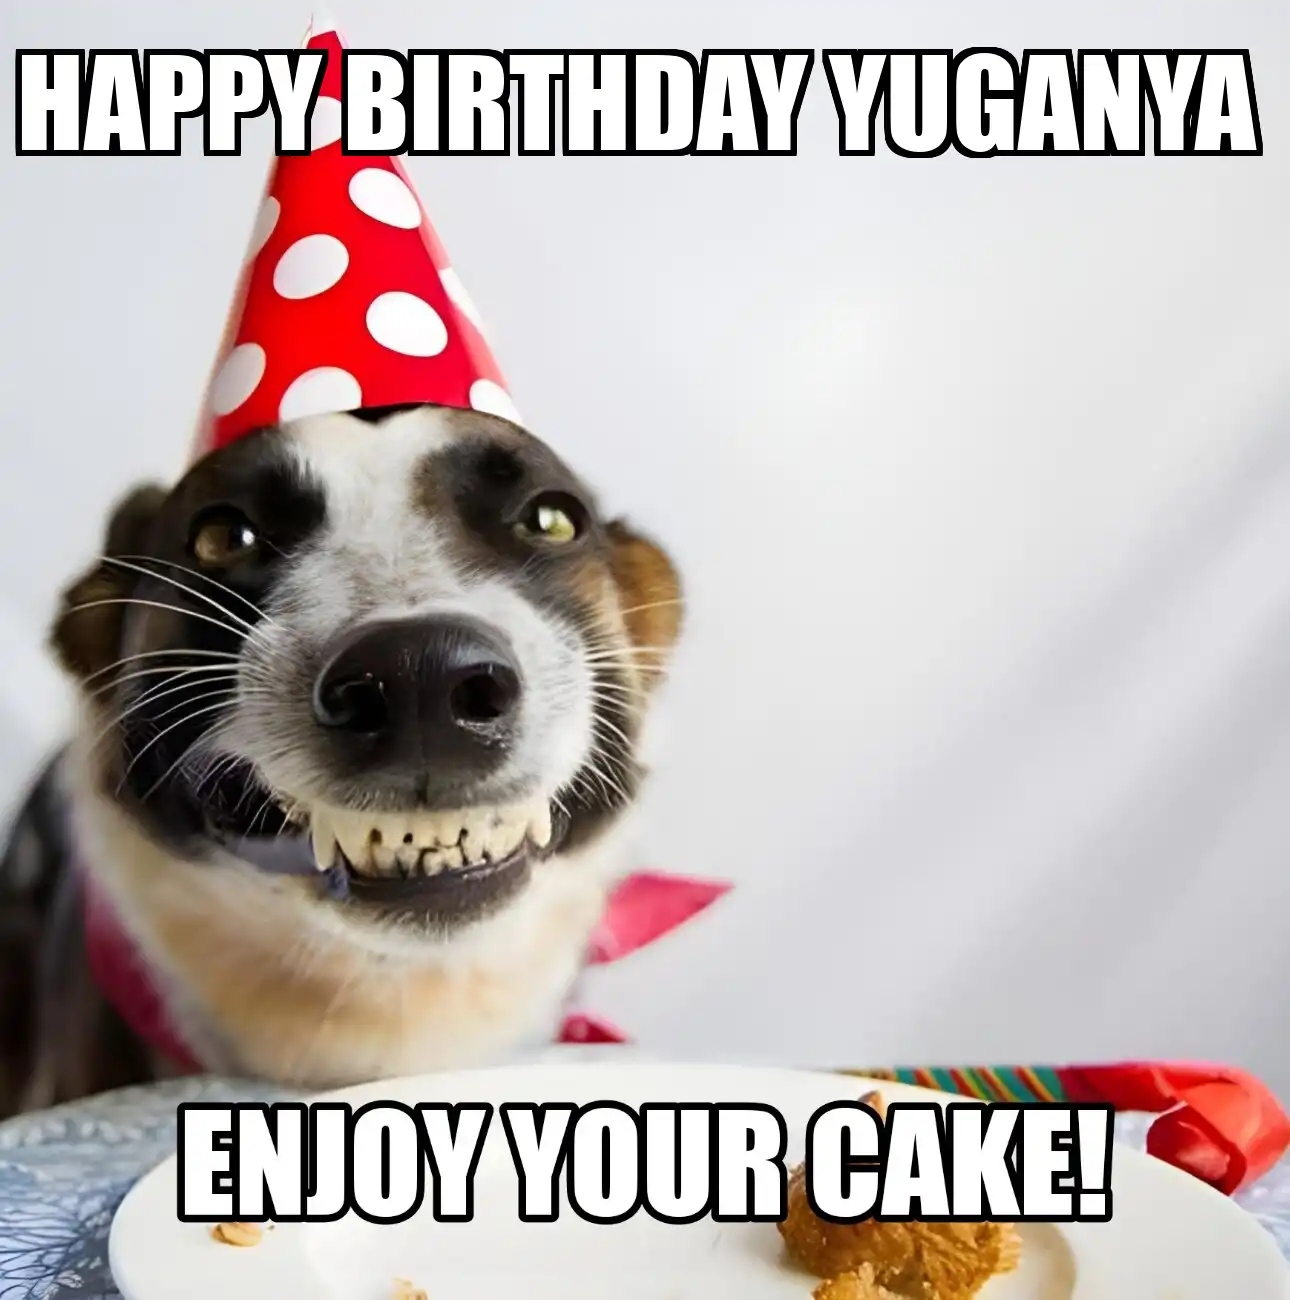 Happy Birthday Yuganya Enjoy Your Cake Dog Meme